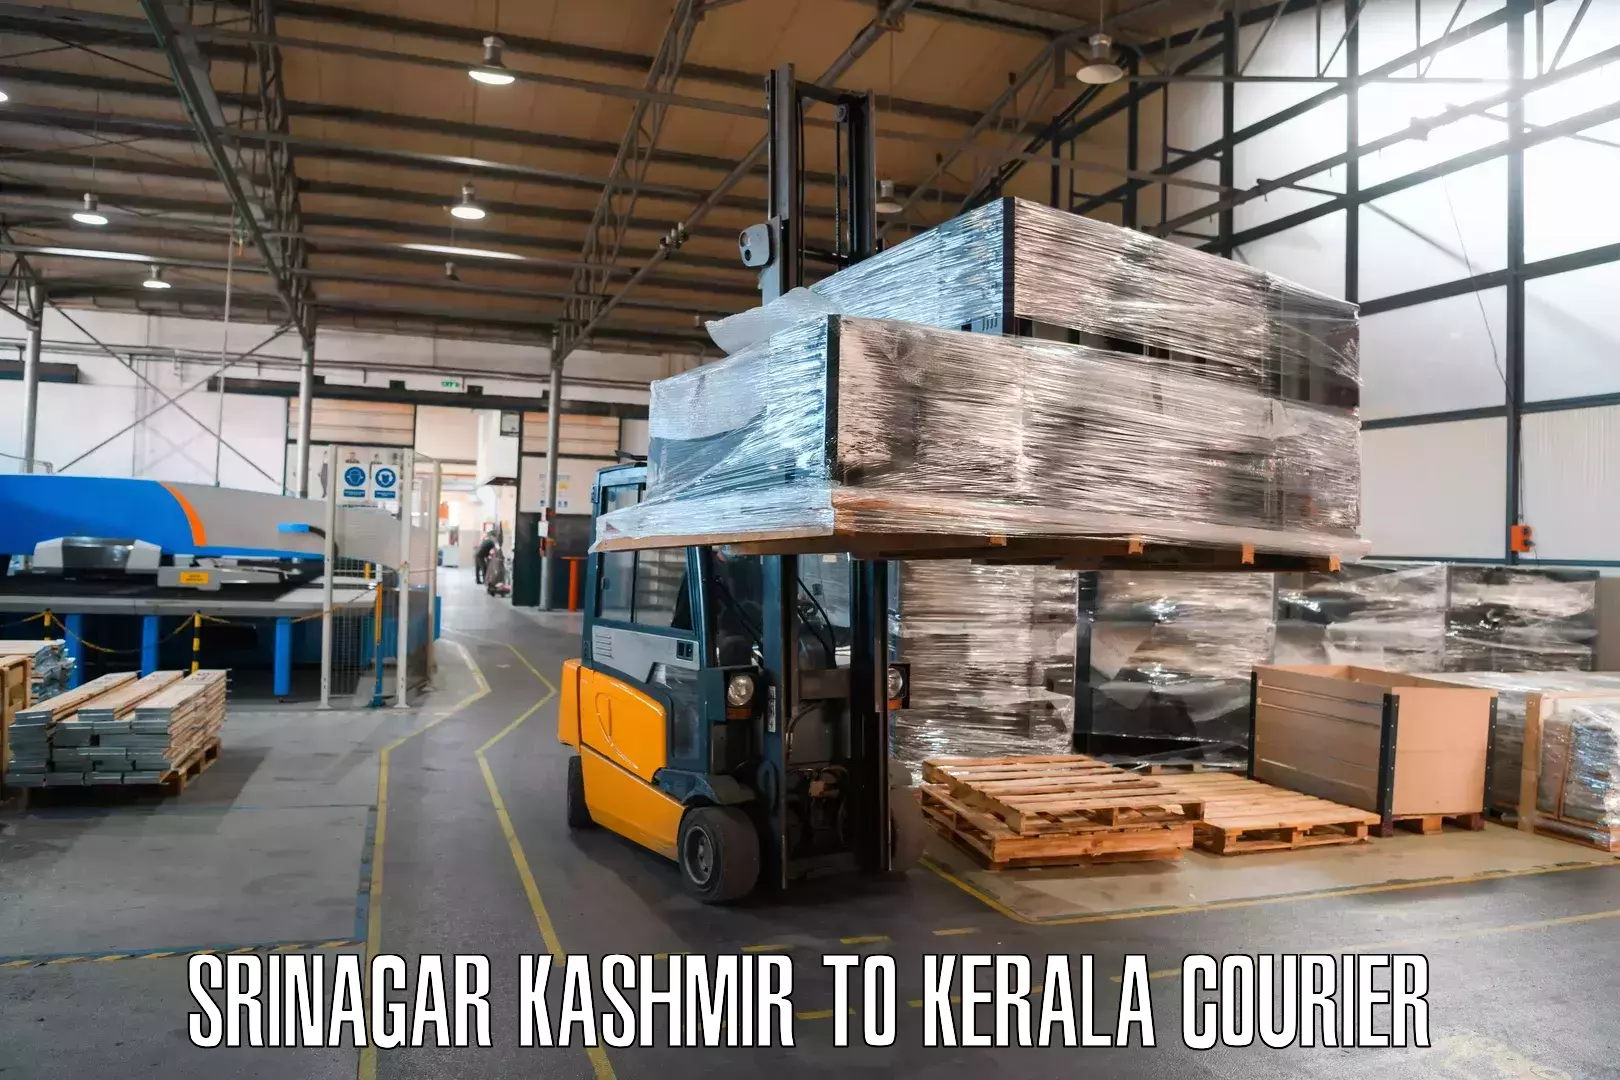 Courier service comparison Srinagar Kashmir to Kanjiramattom